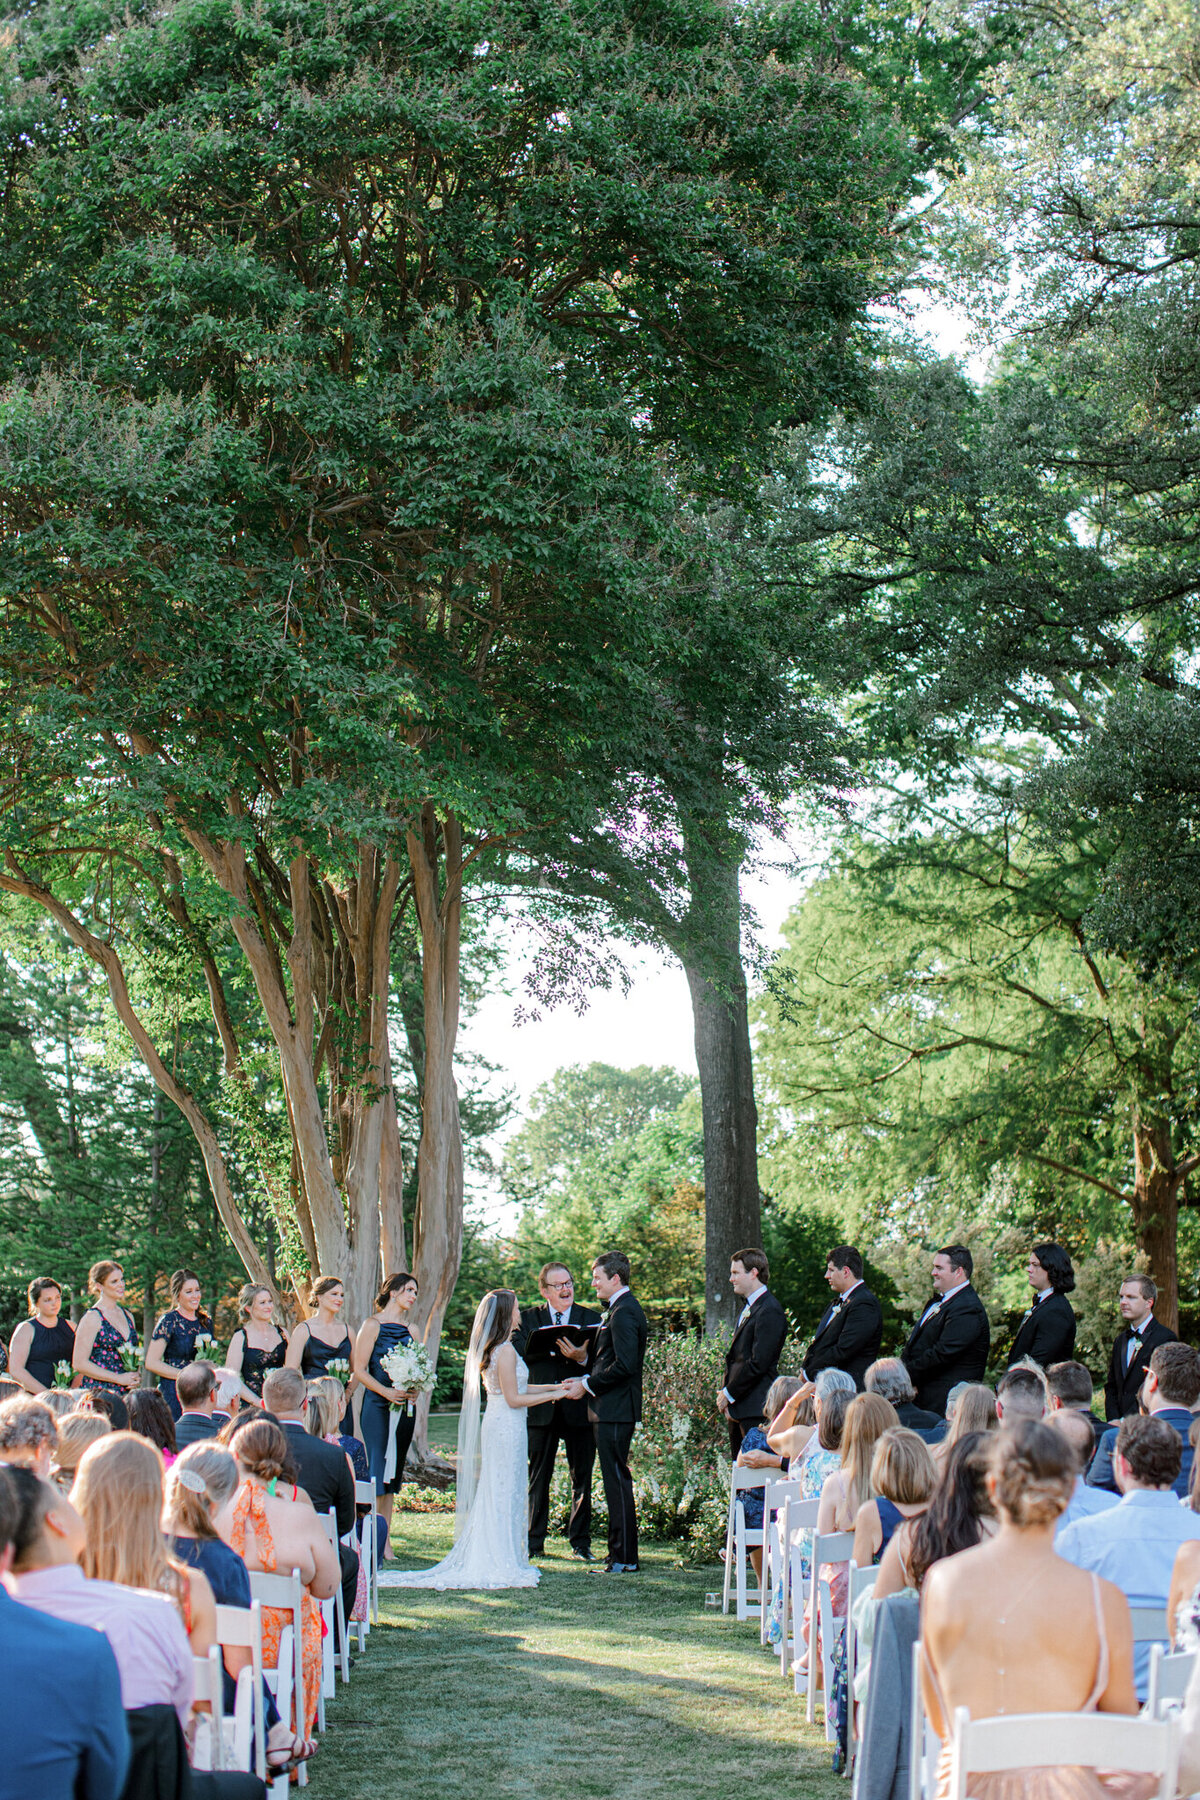 Gena & Matt's Wedding at the Dallas Arboretum | Dallas Wedding Photographer | Sami Kathryn Photography-153